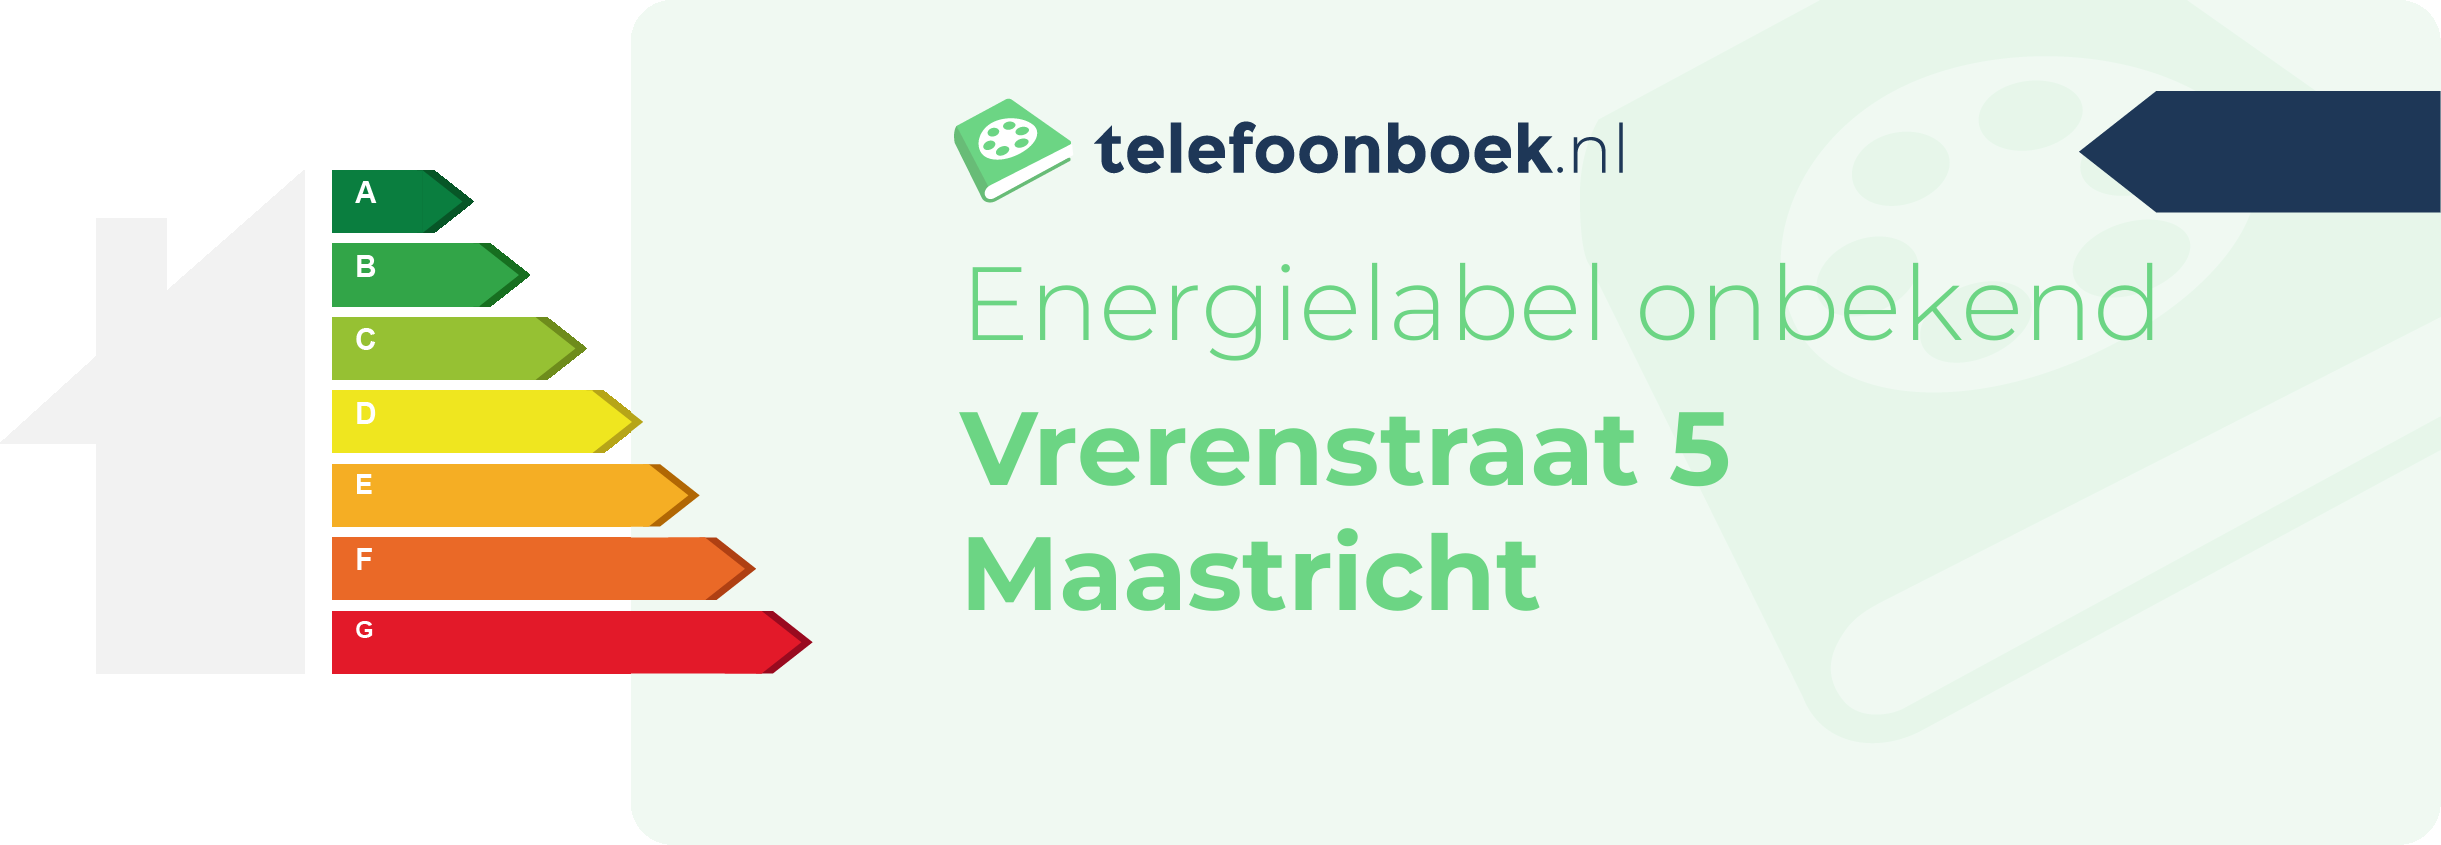 Energielabel Vrerenstraat 5 Maastricht